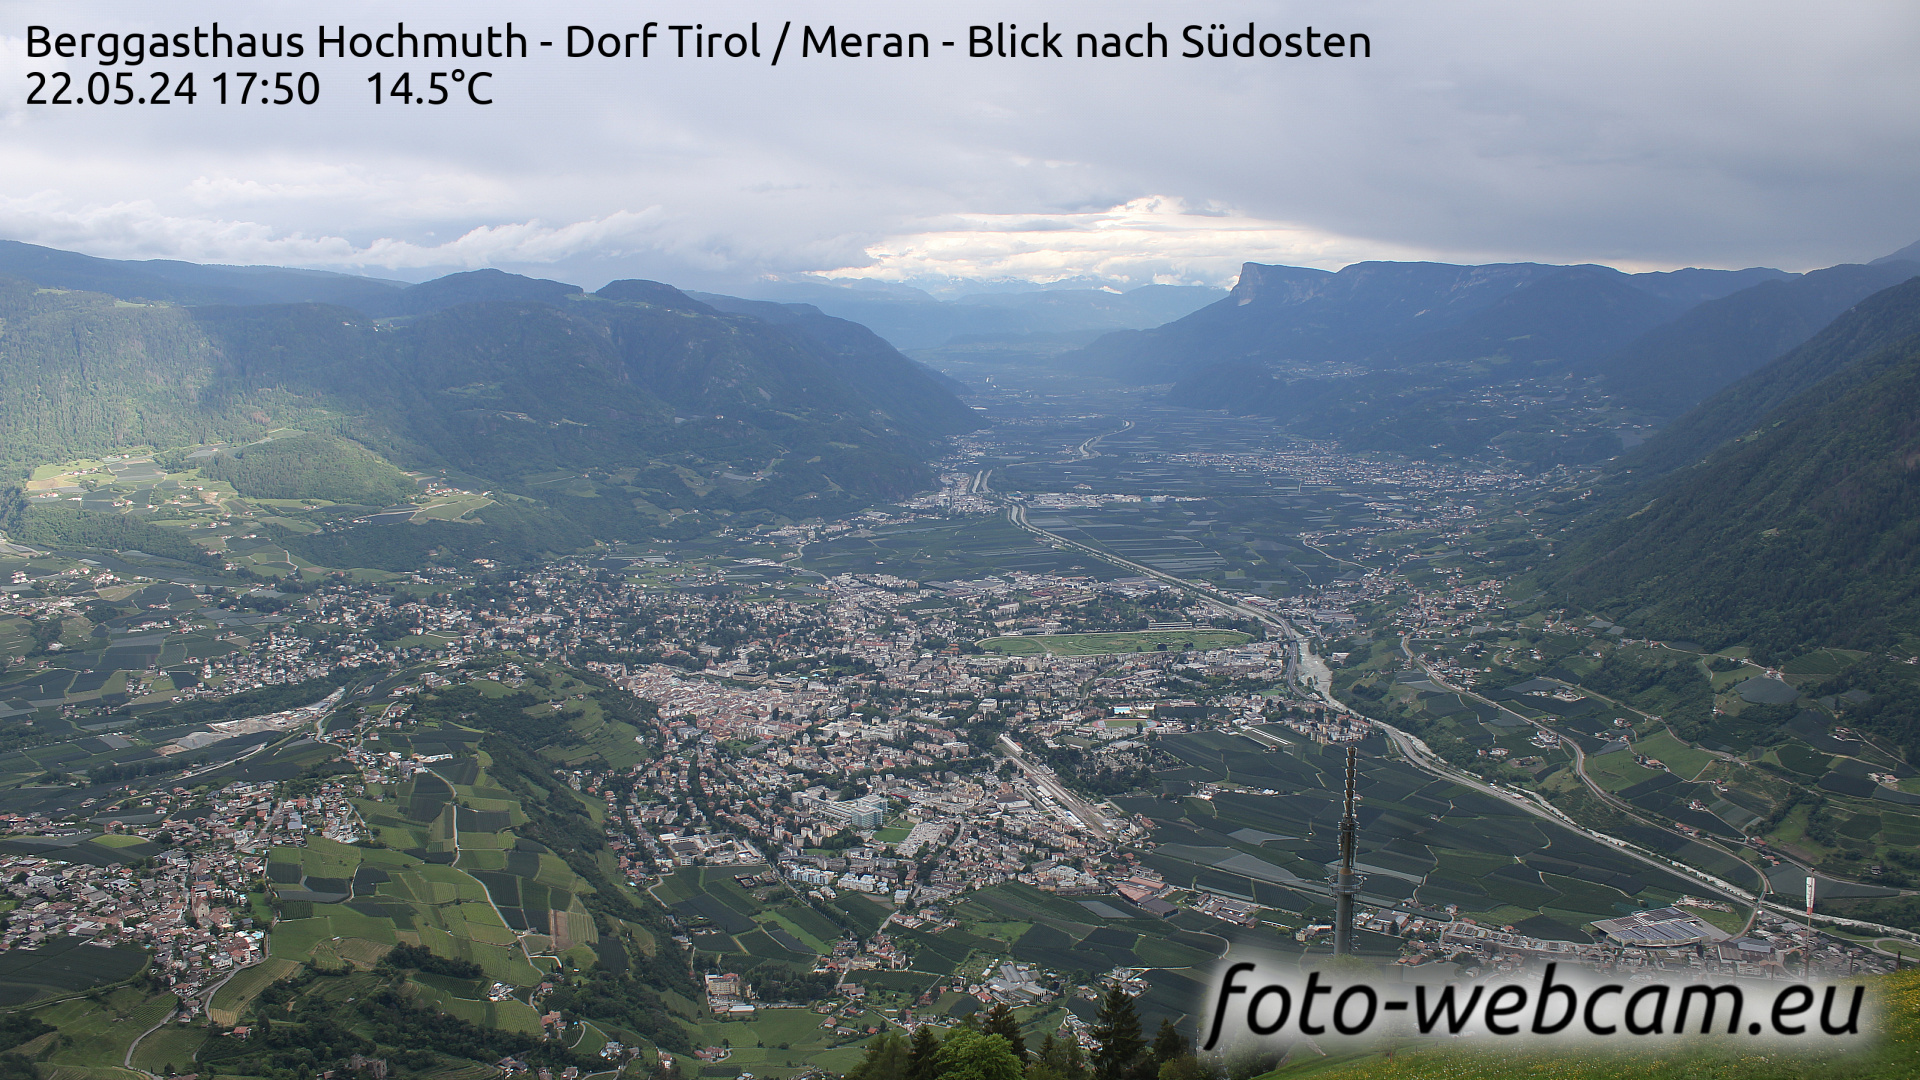 Dorf Tirol Tir. 17:56